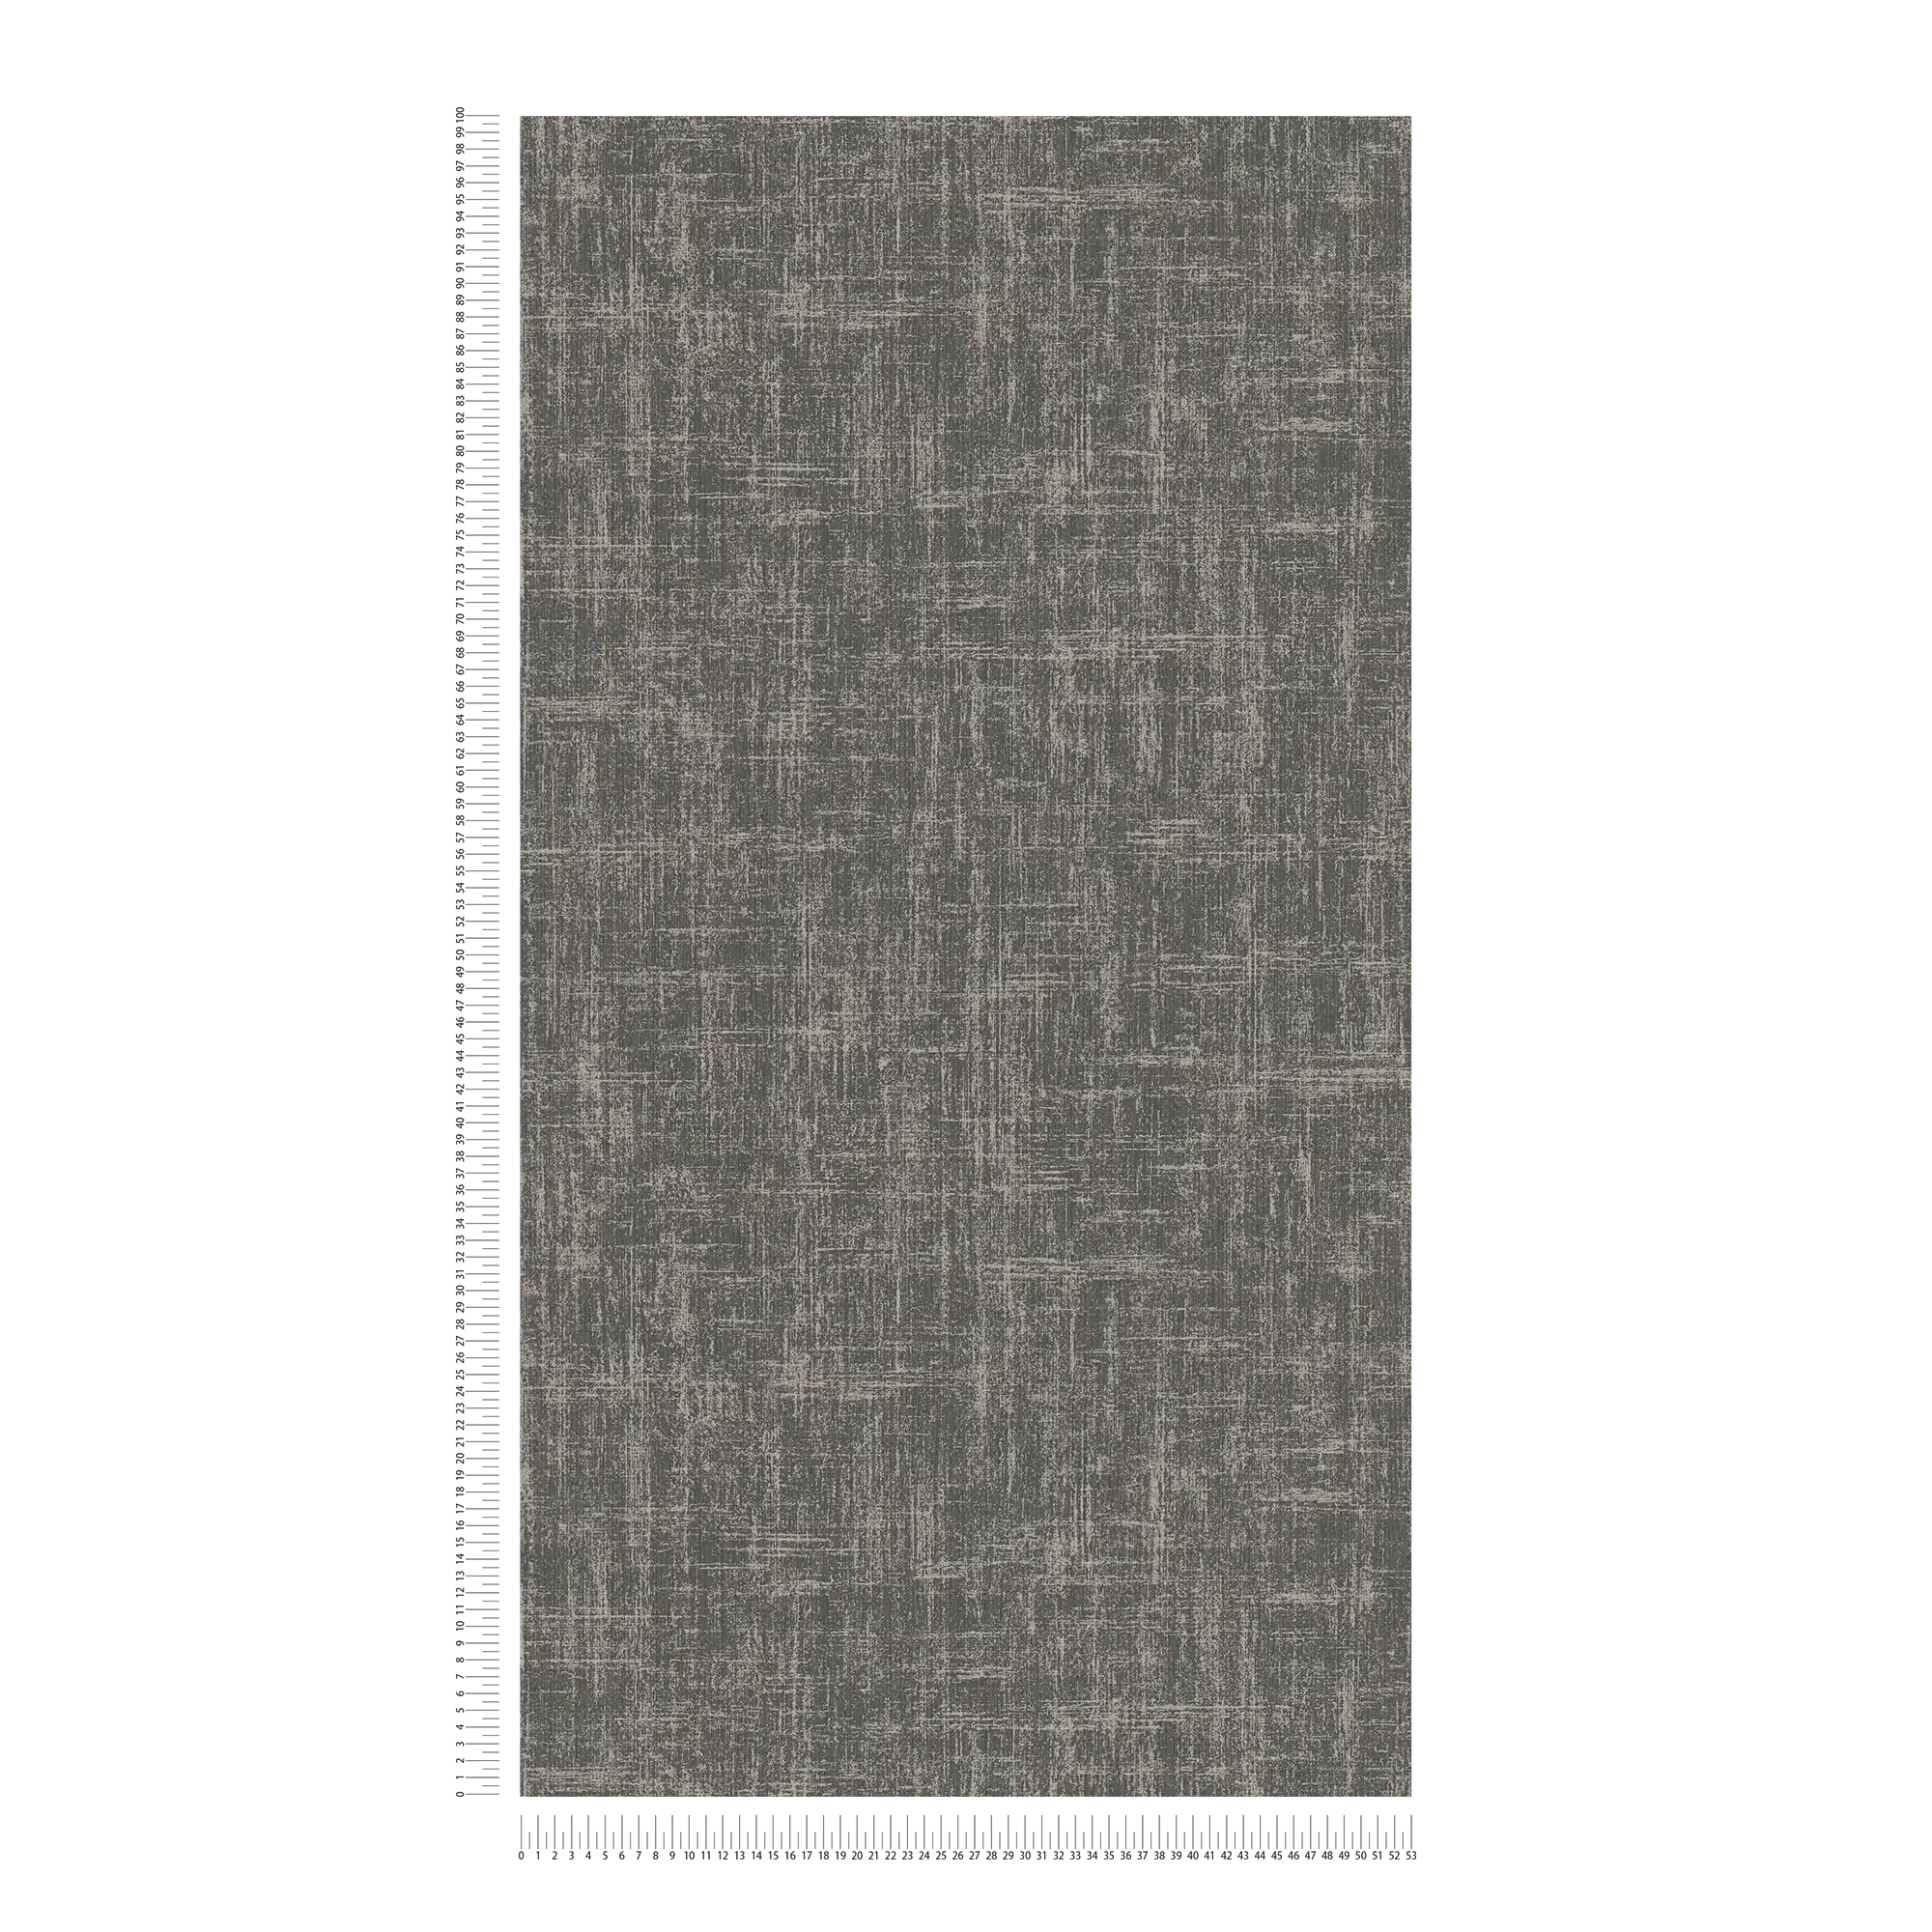             Papier peint intissé à effet métallique chiné - noir, gris
        